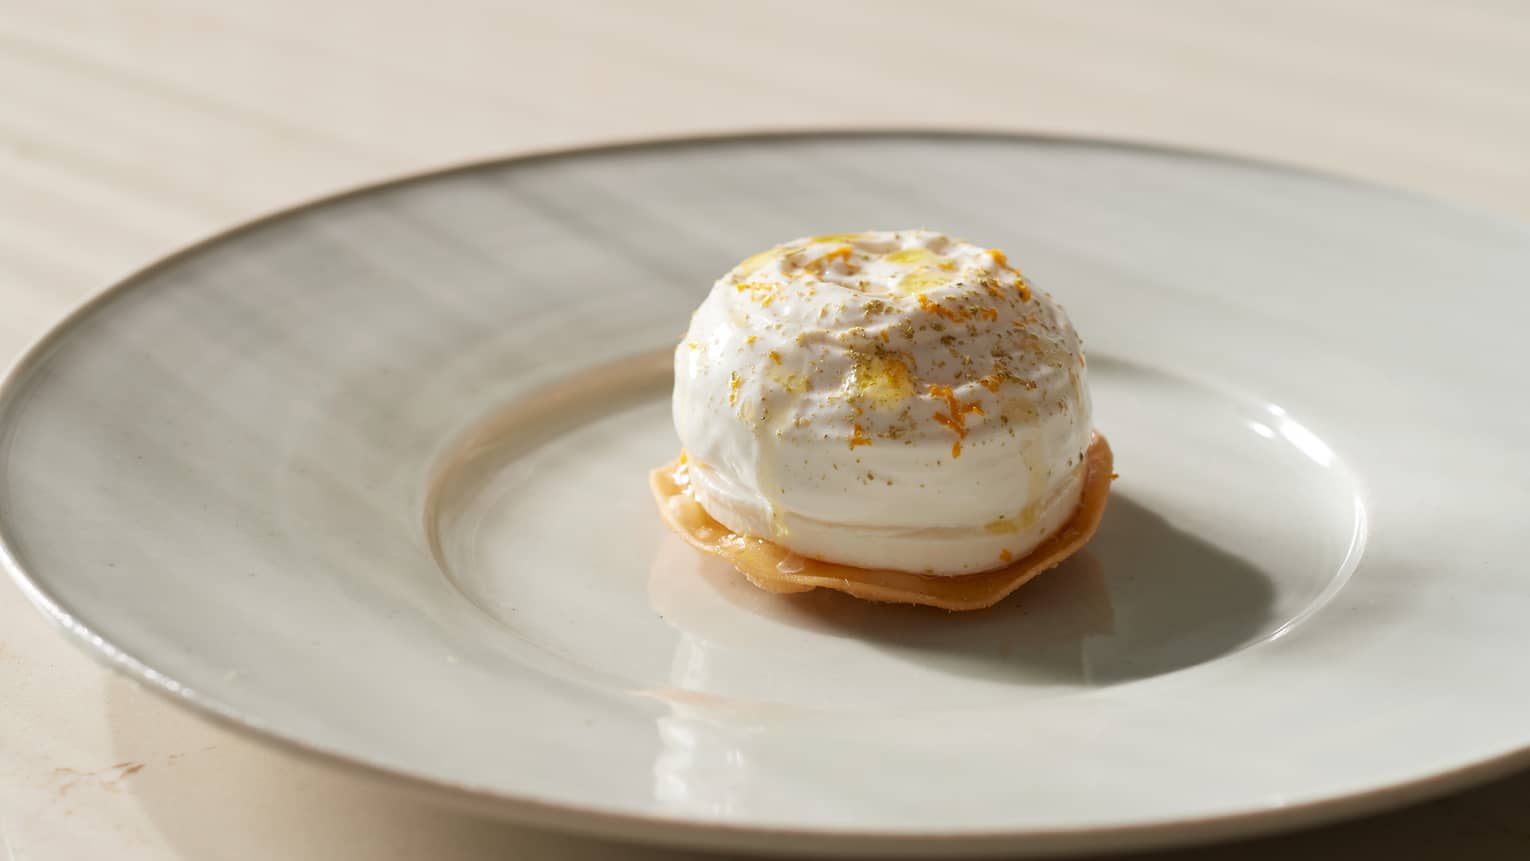 Gourmet dessert on white plate